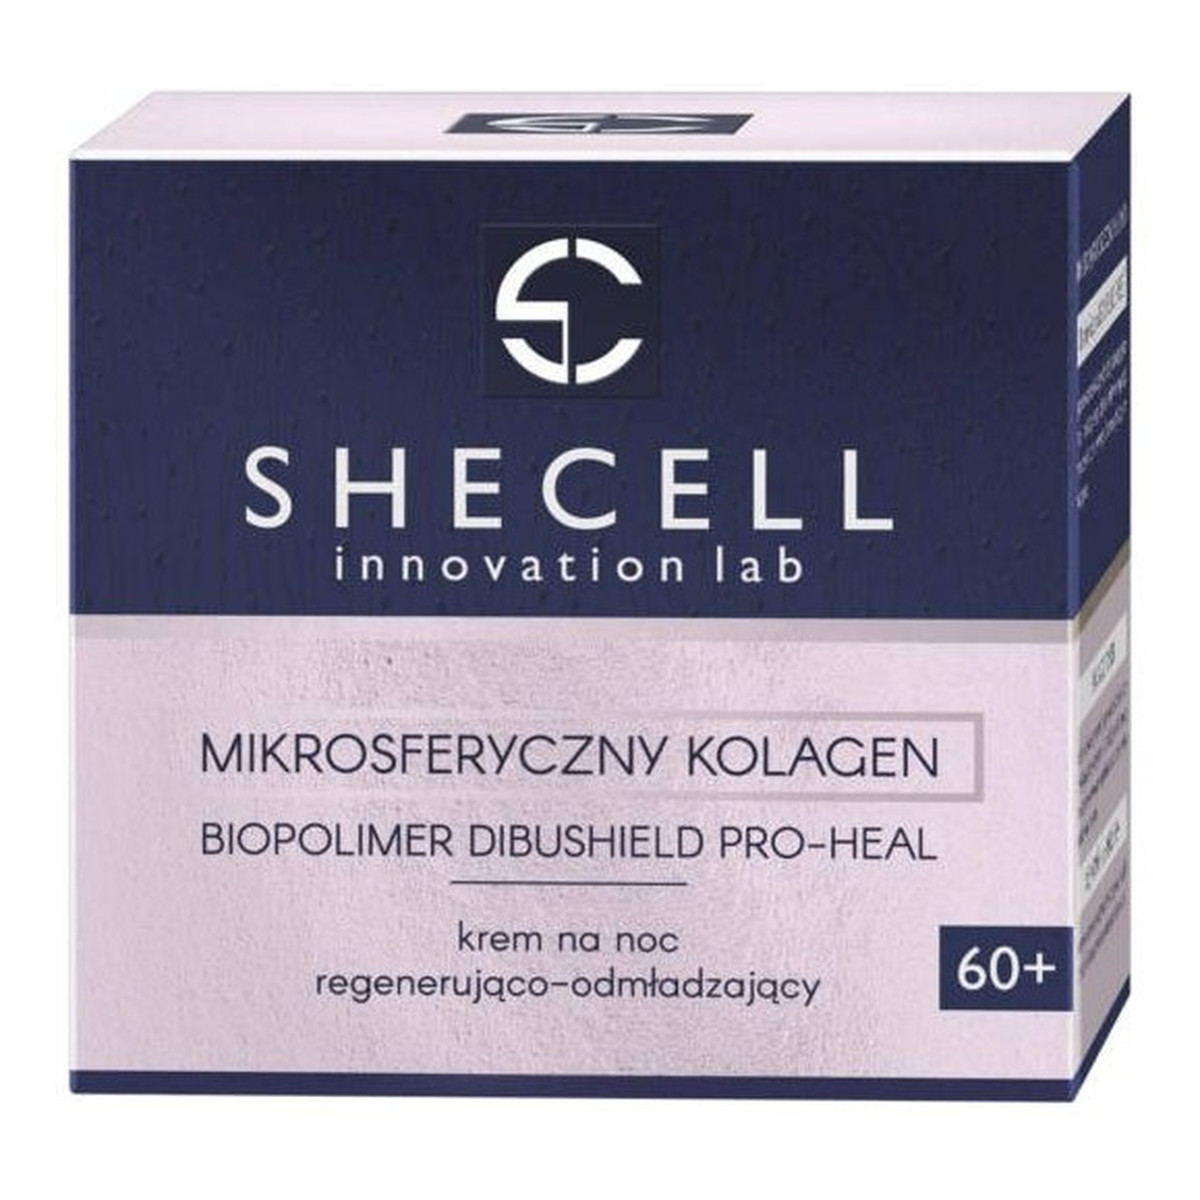 Shecell Innovation Lab Mikrosferyczny kolagen 60+ krem na noc regenerująco-odmładzający 50ml